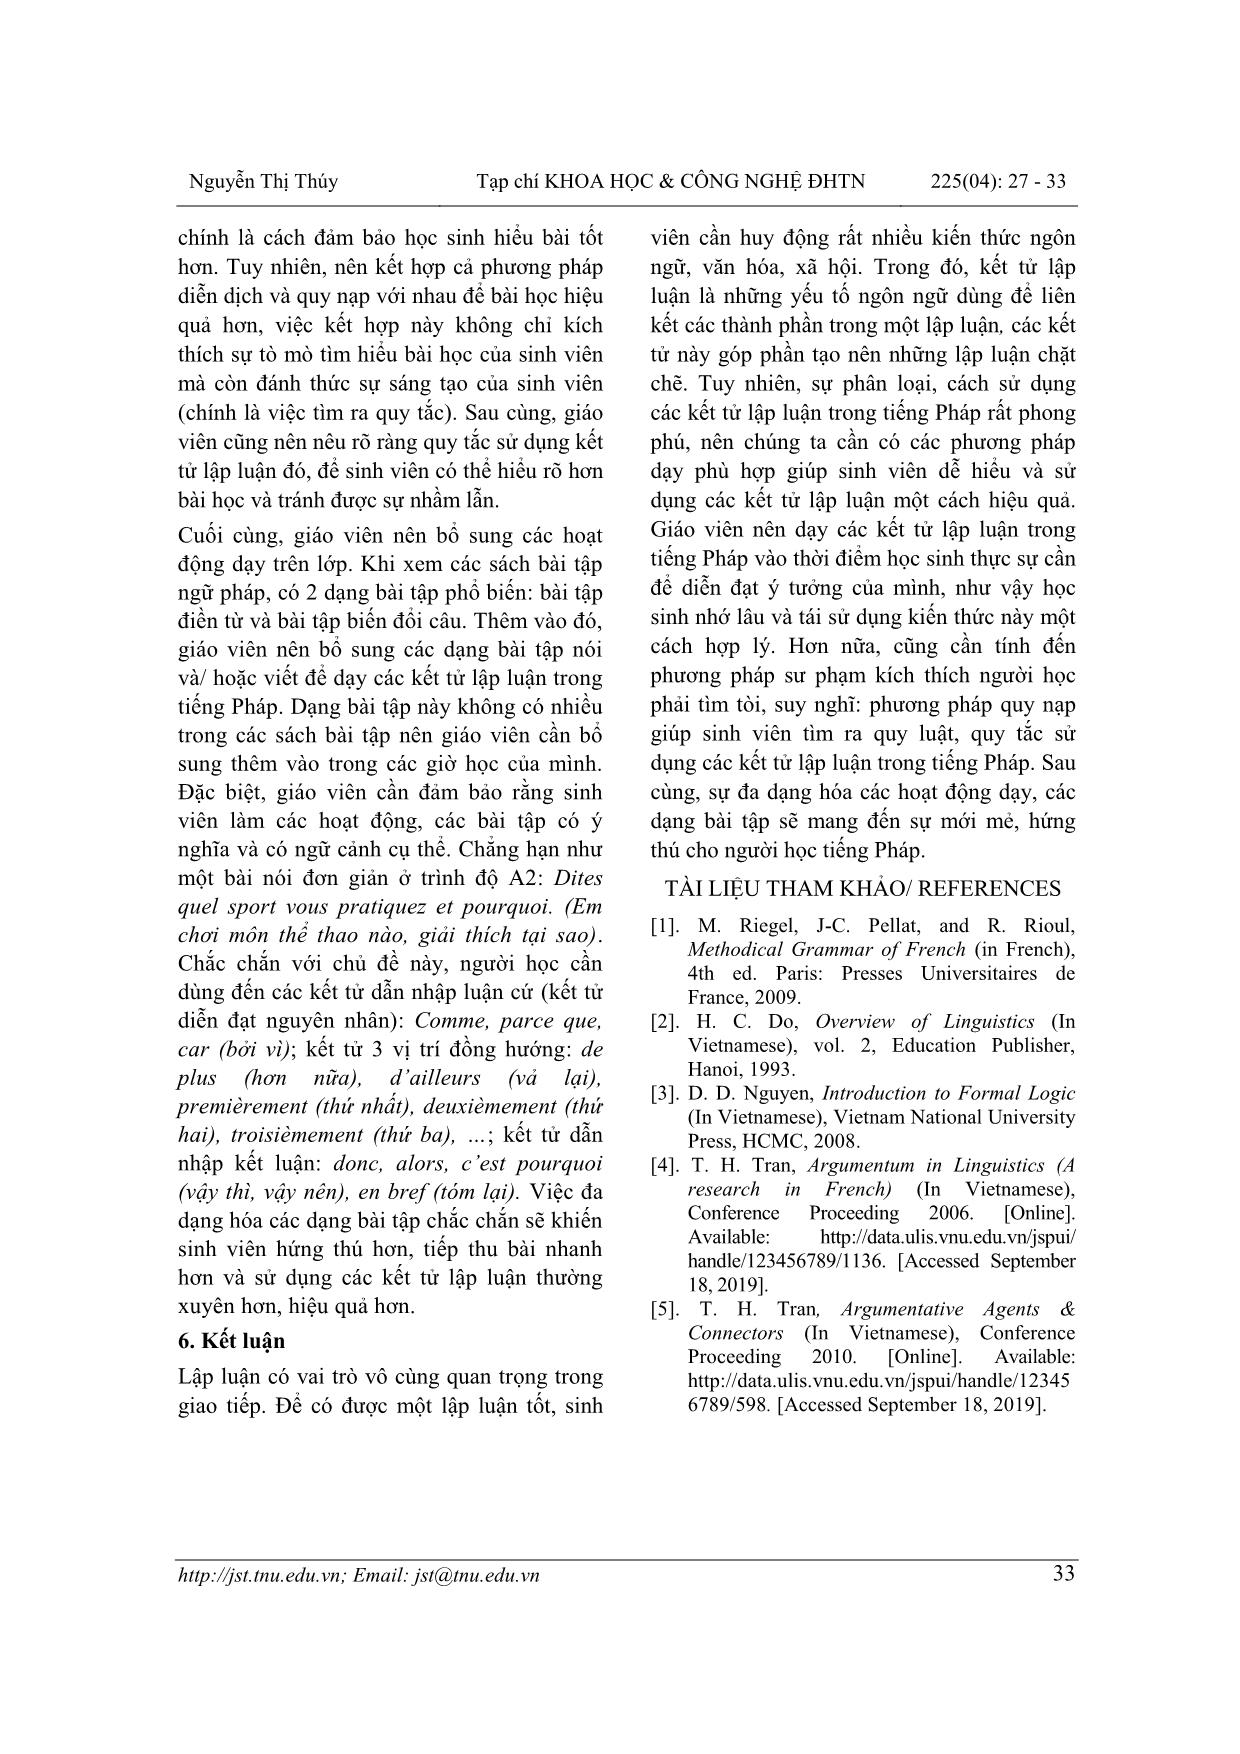 Dạy các kết tử lập luận trong tiếng Pháp cho sinh viên khoa Ngoại ngữ - Đại học Thái Nguyên trang 7